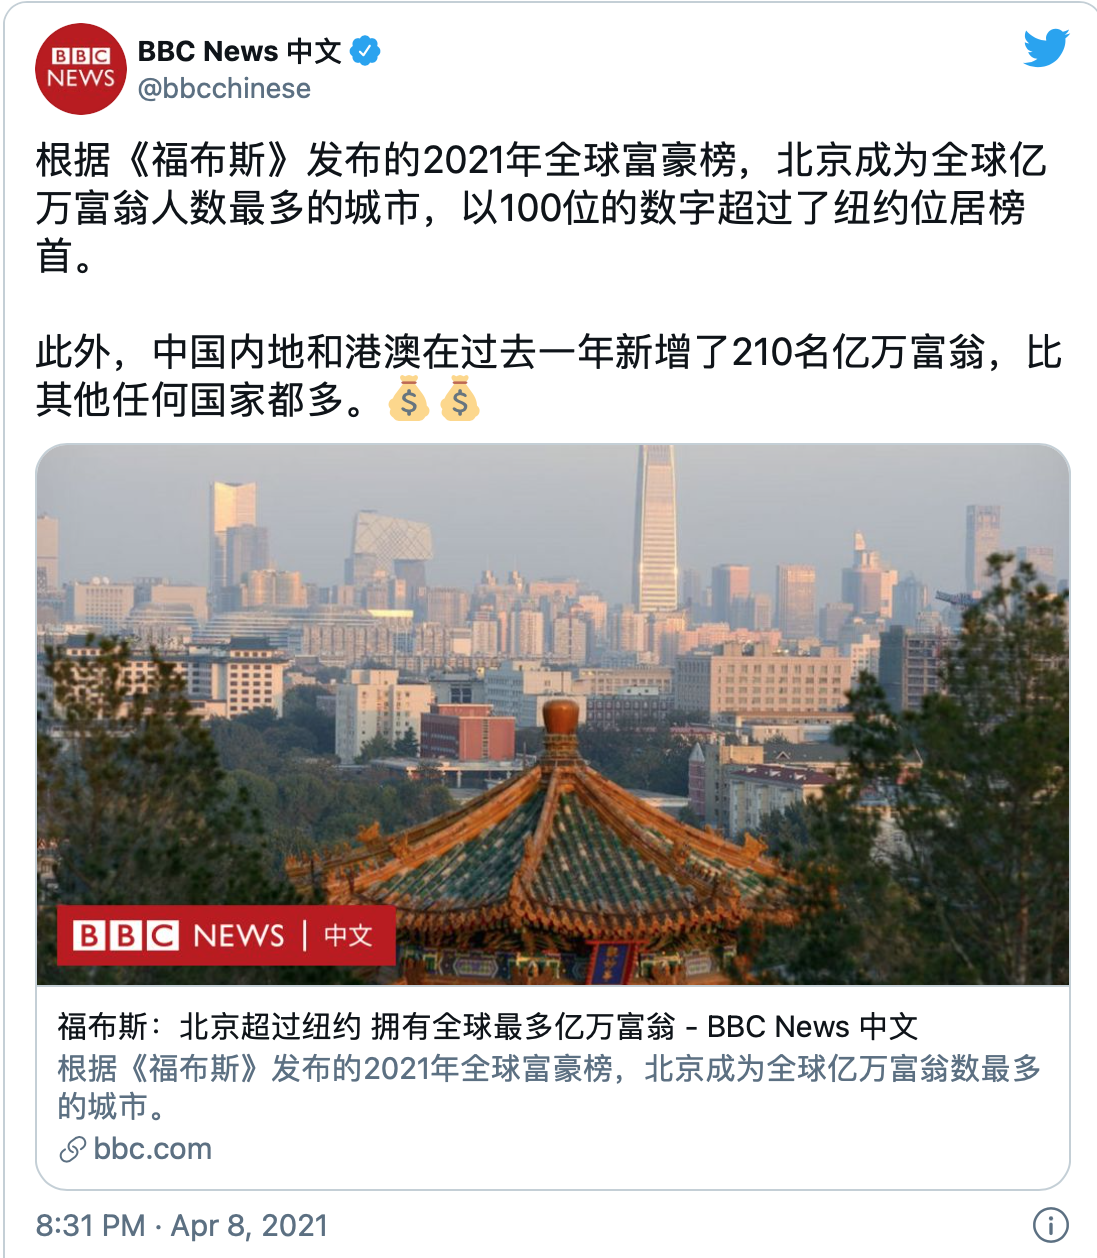 北京超过纽约 成为全球最多亿万富翁居住的城市